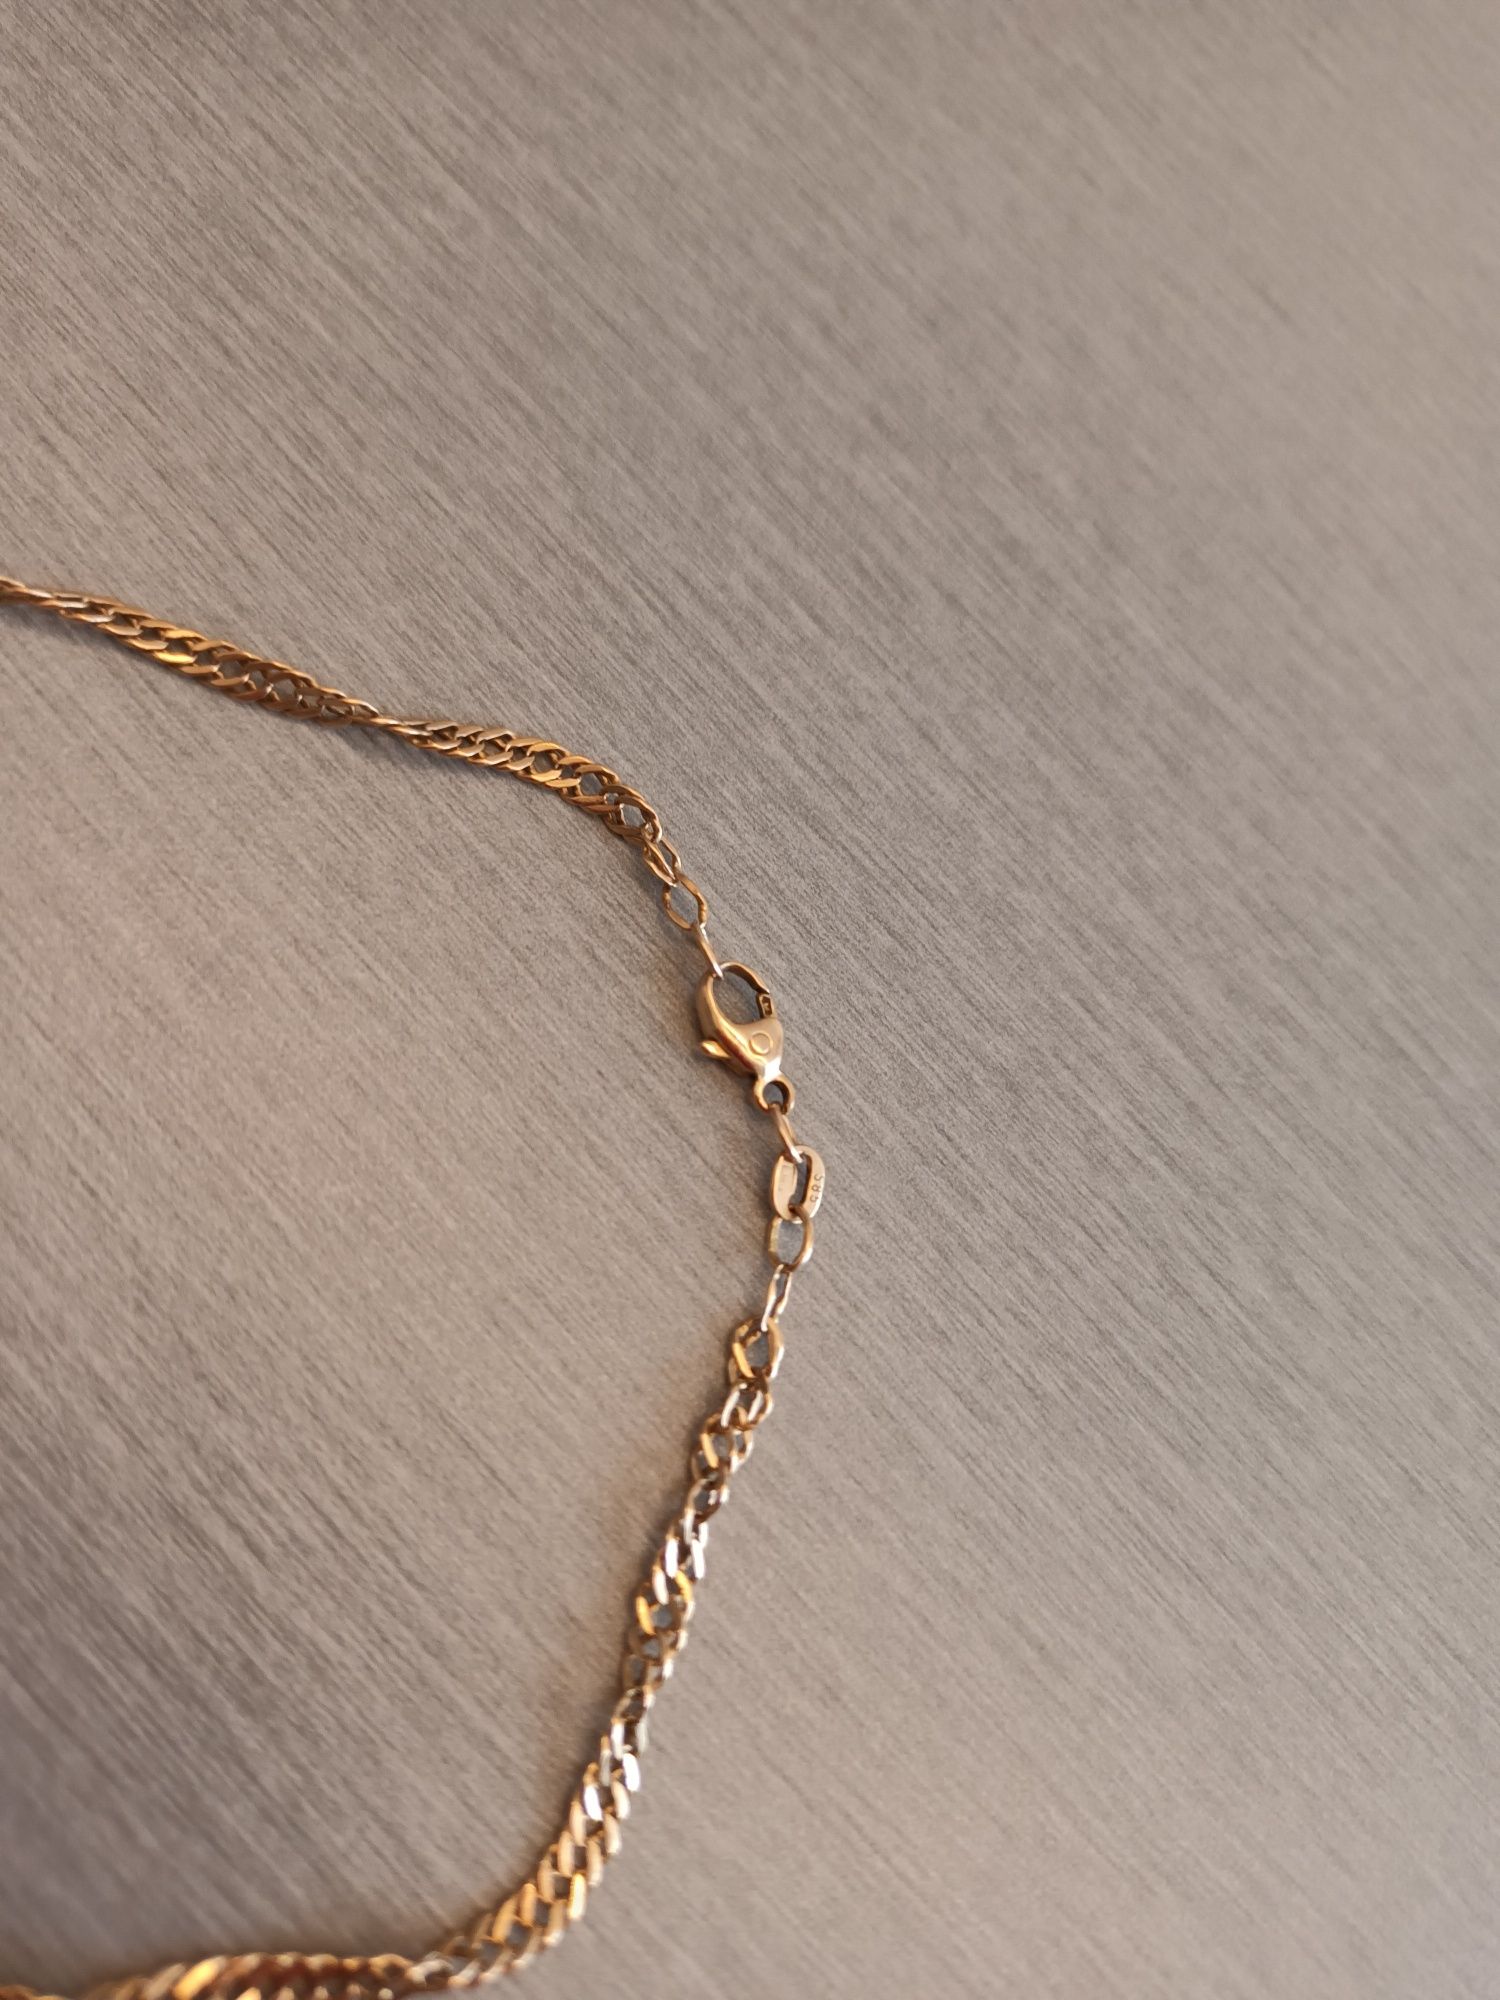 Złota kręcona bransoletka diamentowa Singapur 585 2,6g 4mm 22cm